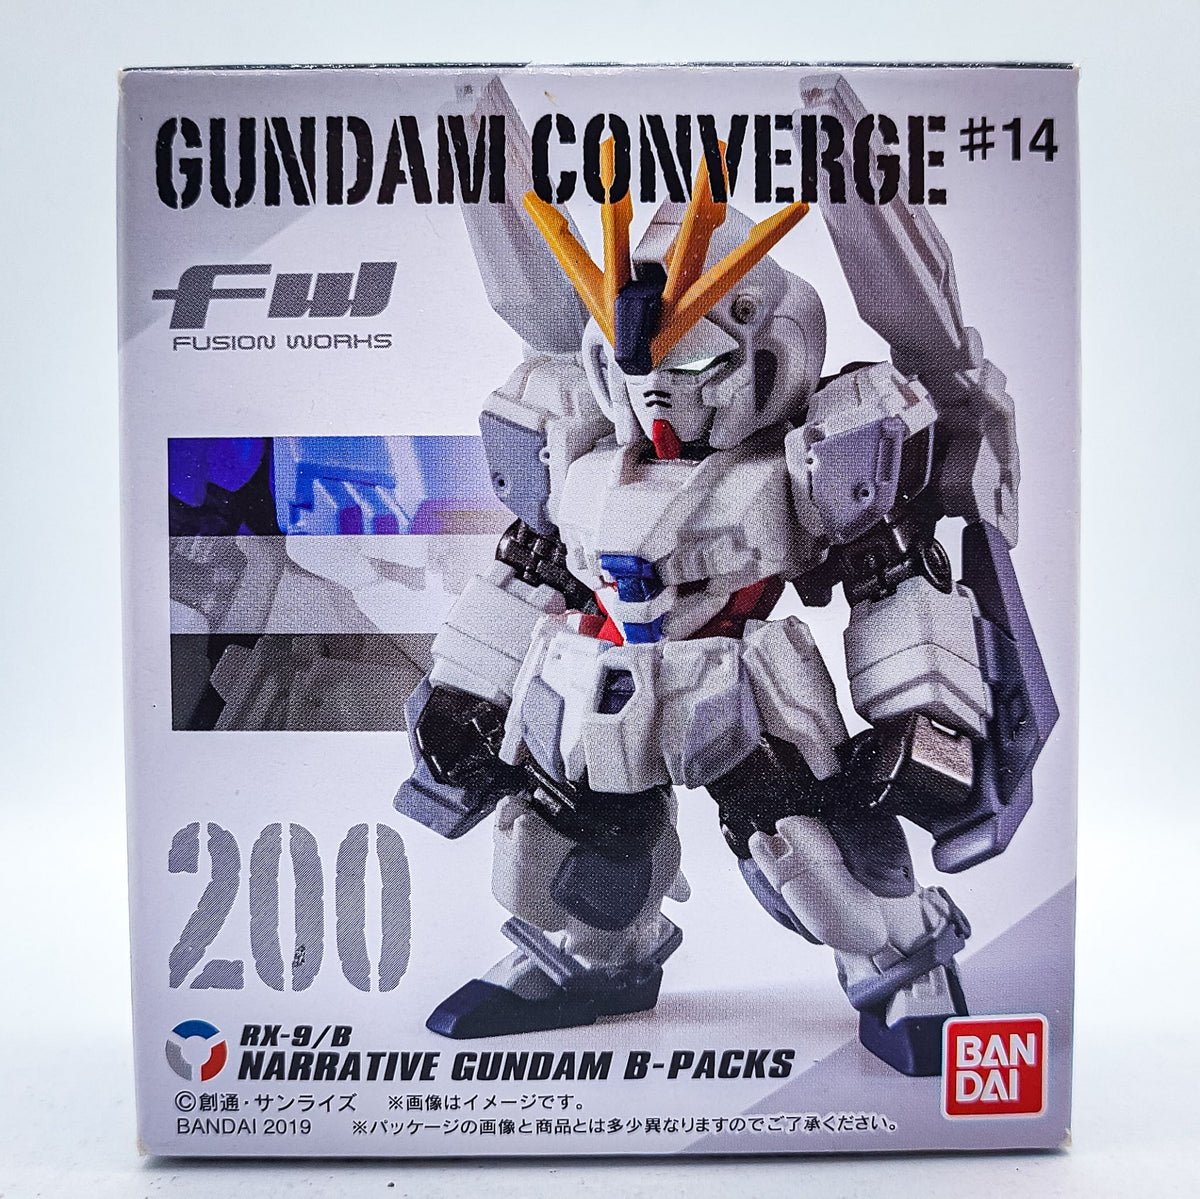 Gundam Converge #200 Narrative Gundam B-Packs by Bandai - 1